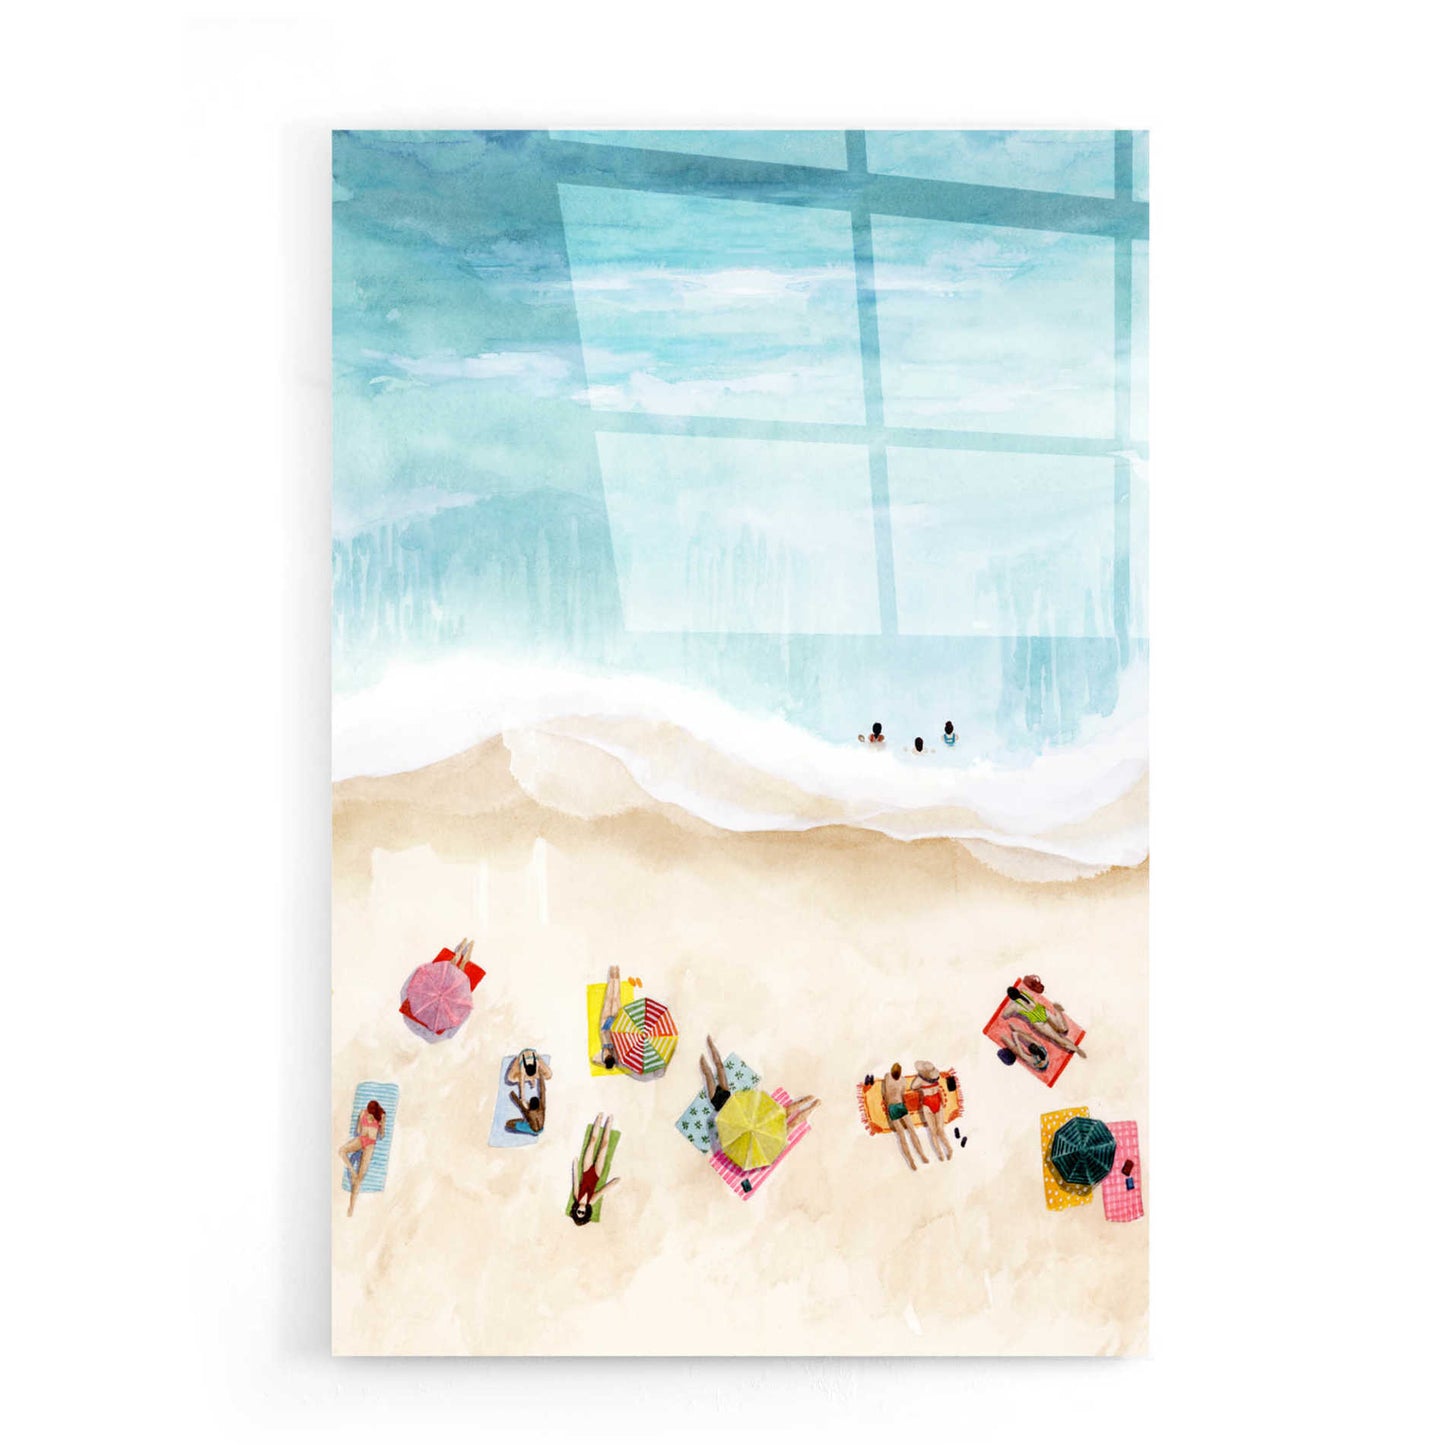 Epic Art 'Beach Week II' by Grace Popp, Acrylic Wall Glass,16x24